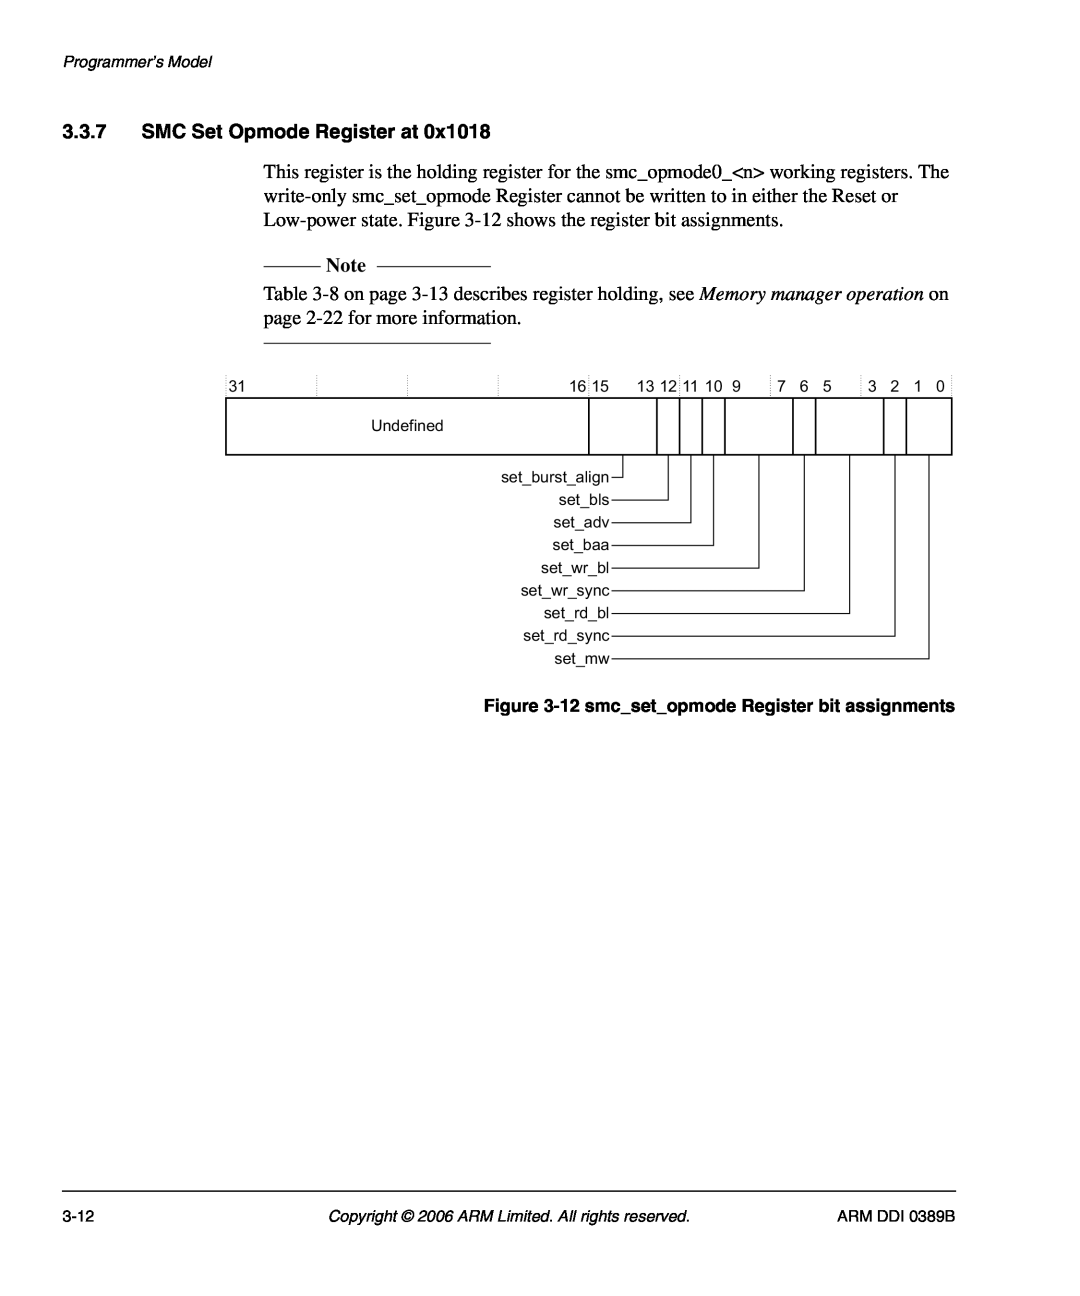 SMC Networks PL241, AHB SRAM/NOR manual SMC Set Opmode Register at, 12 smcsetopmode Register bit assignments 